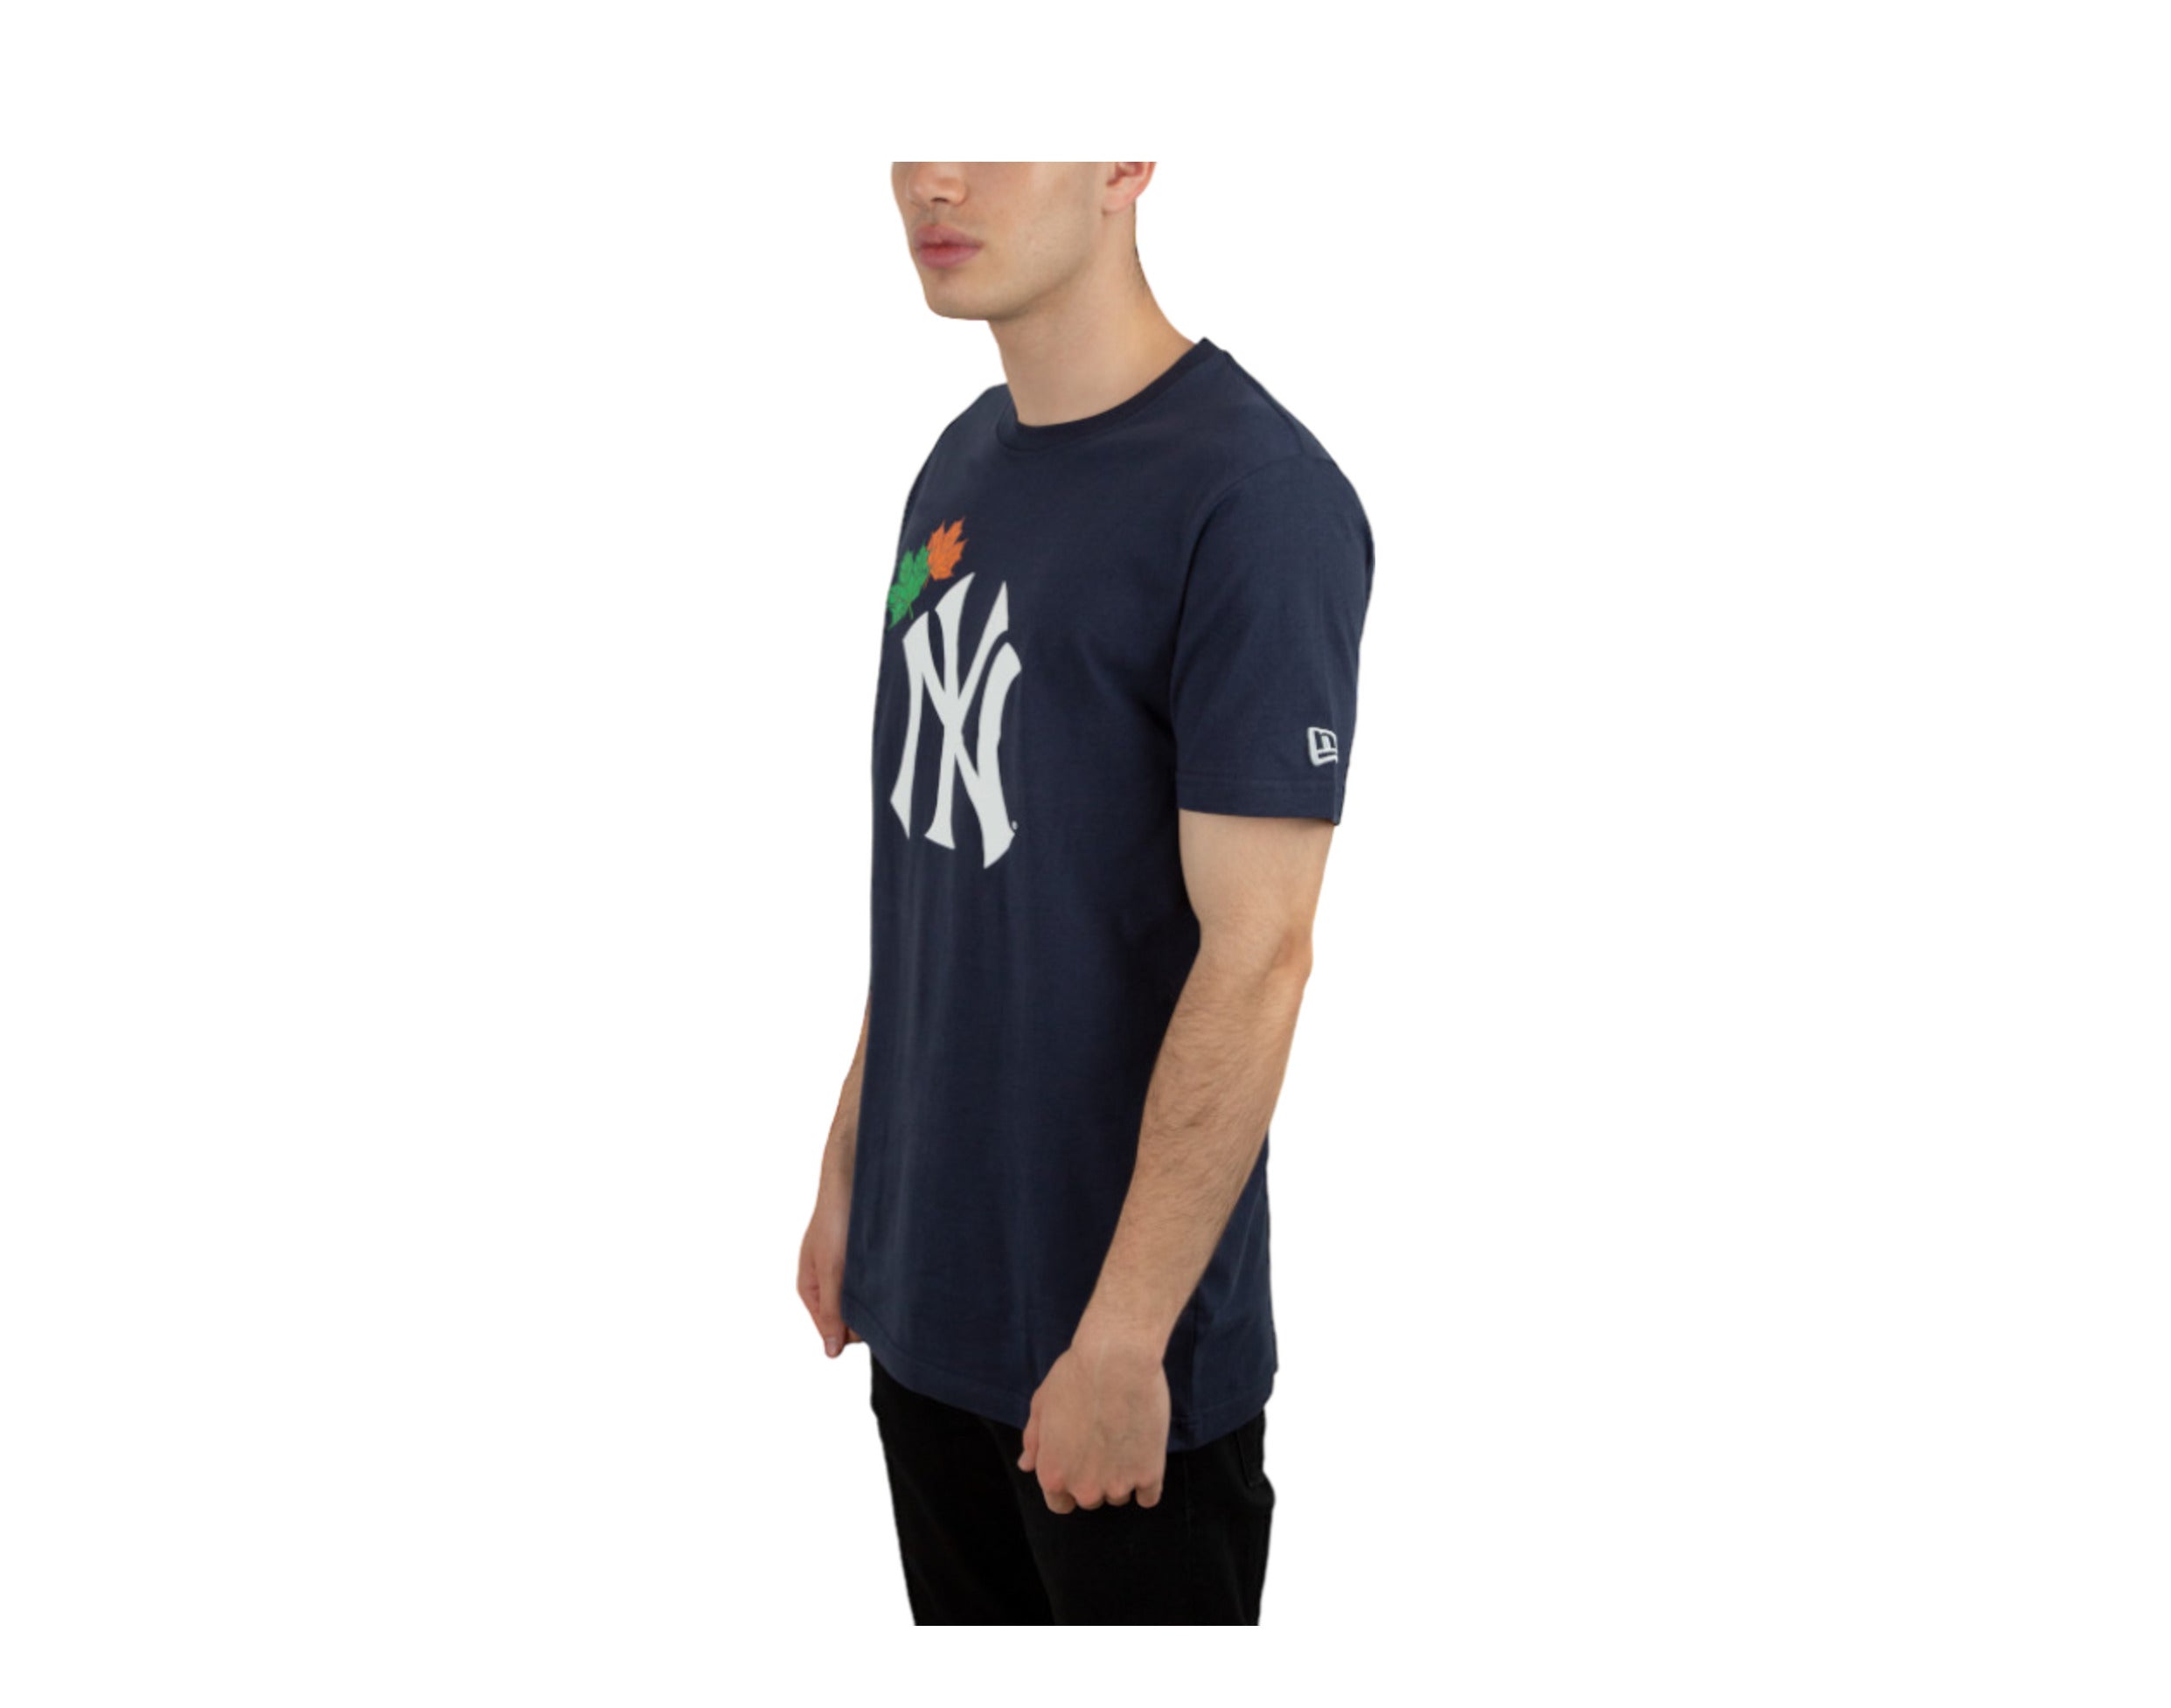 New era New York Yankees MLB Champions Series Short Sleeve T-Shirt